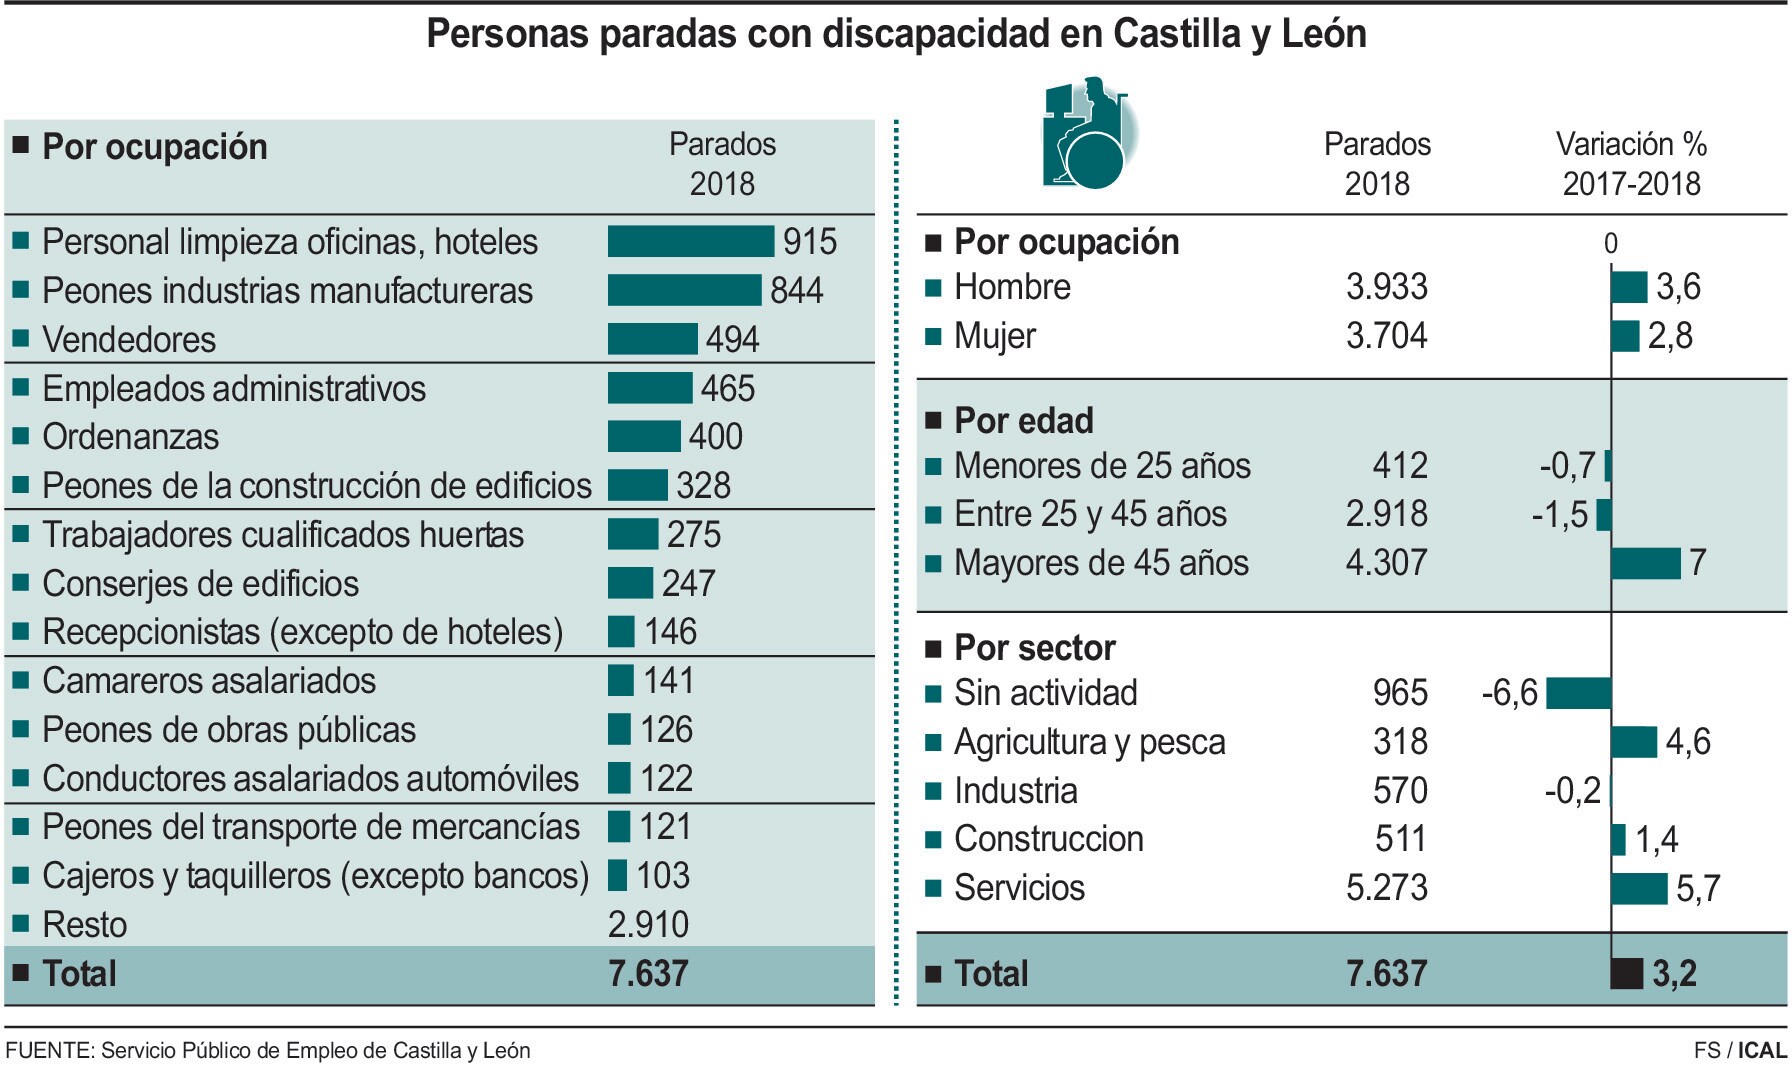 Personas paradas con discapacidad en Castilla y León